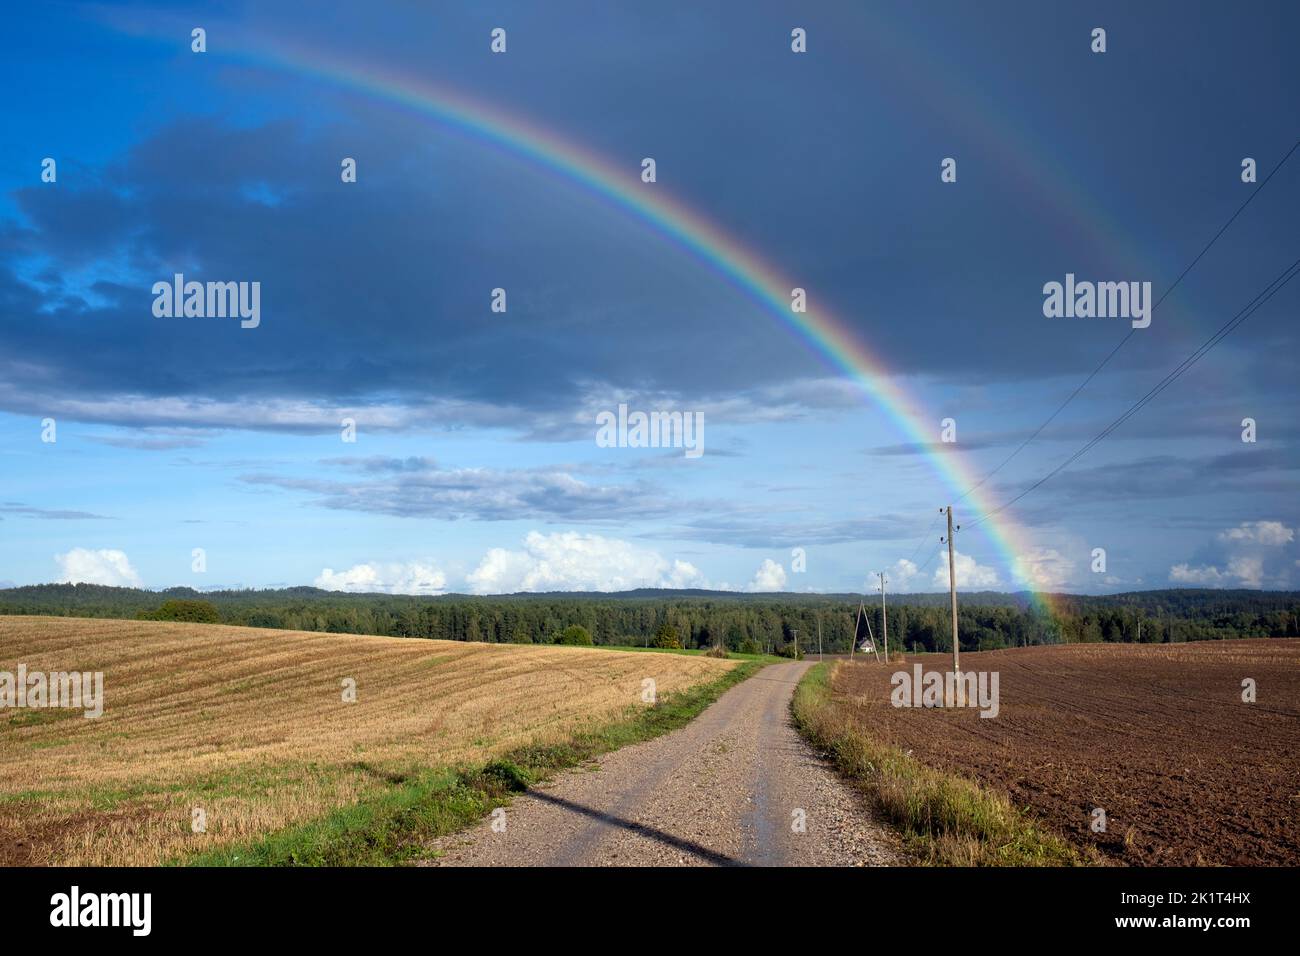 Double rainbow over Latvian landscape in Tukums area, Latvia Stock Photo